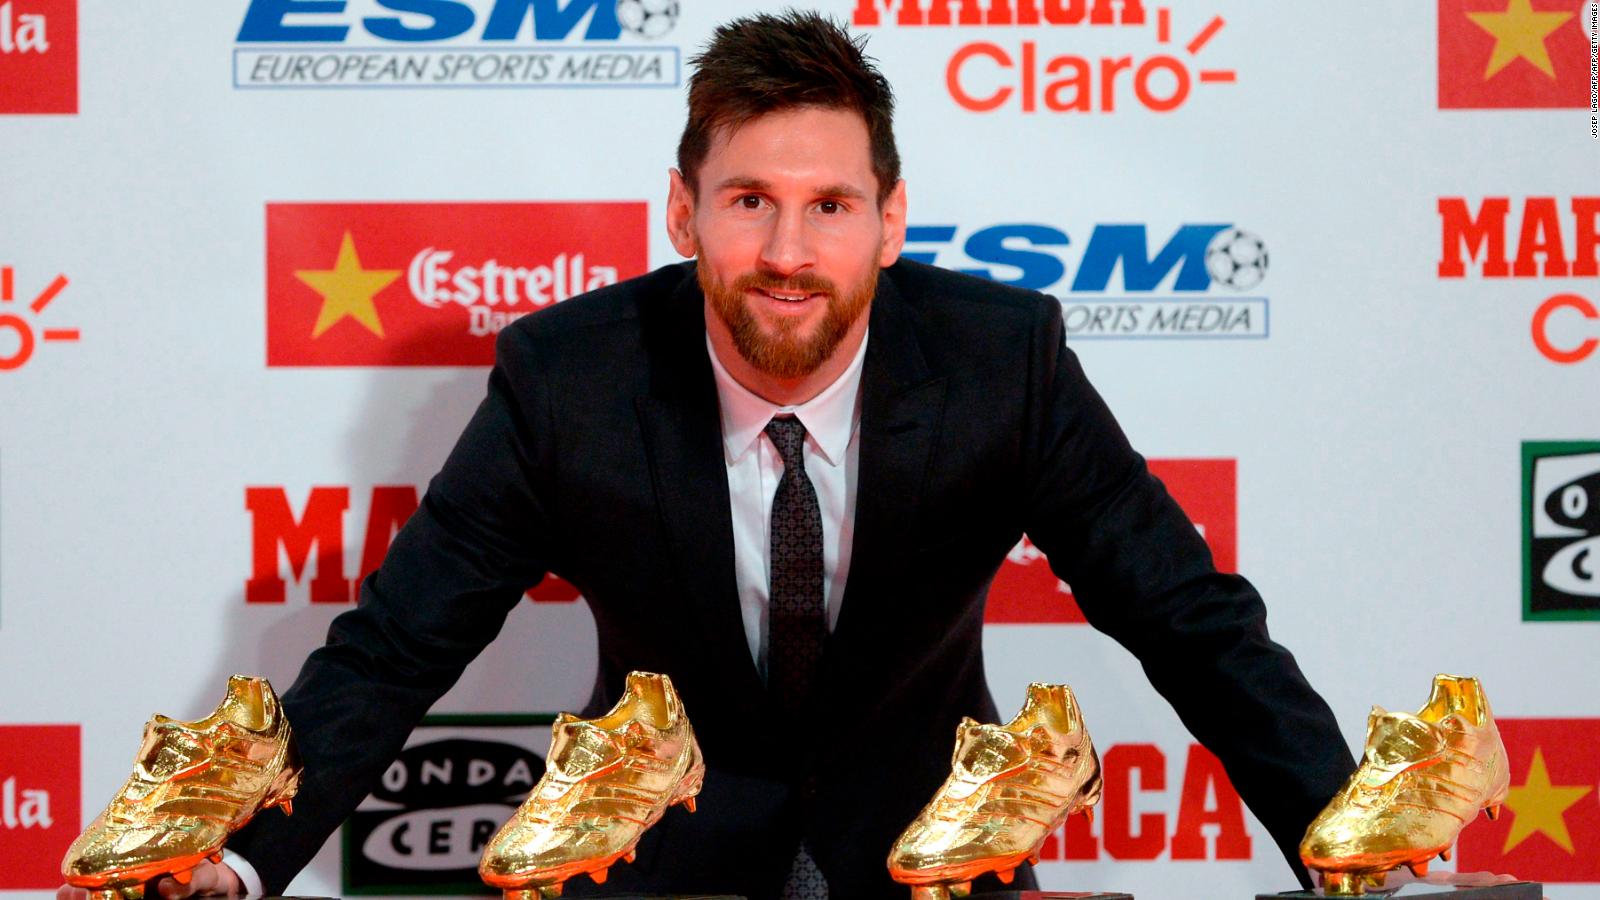 Cuarta bota de oro Lionel Messi: iguala a Cristiano Ronaldo como máximo goleador en Europa | Video | CNN